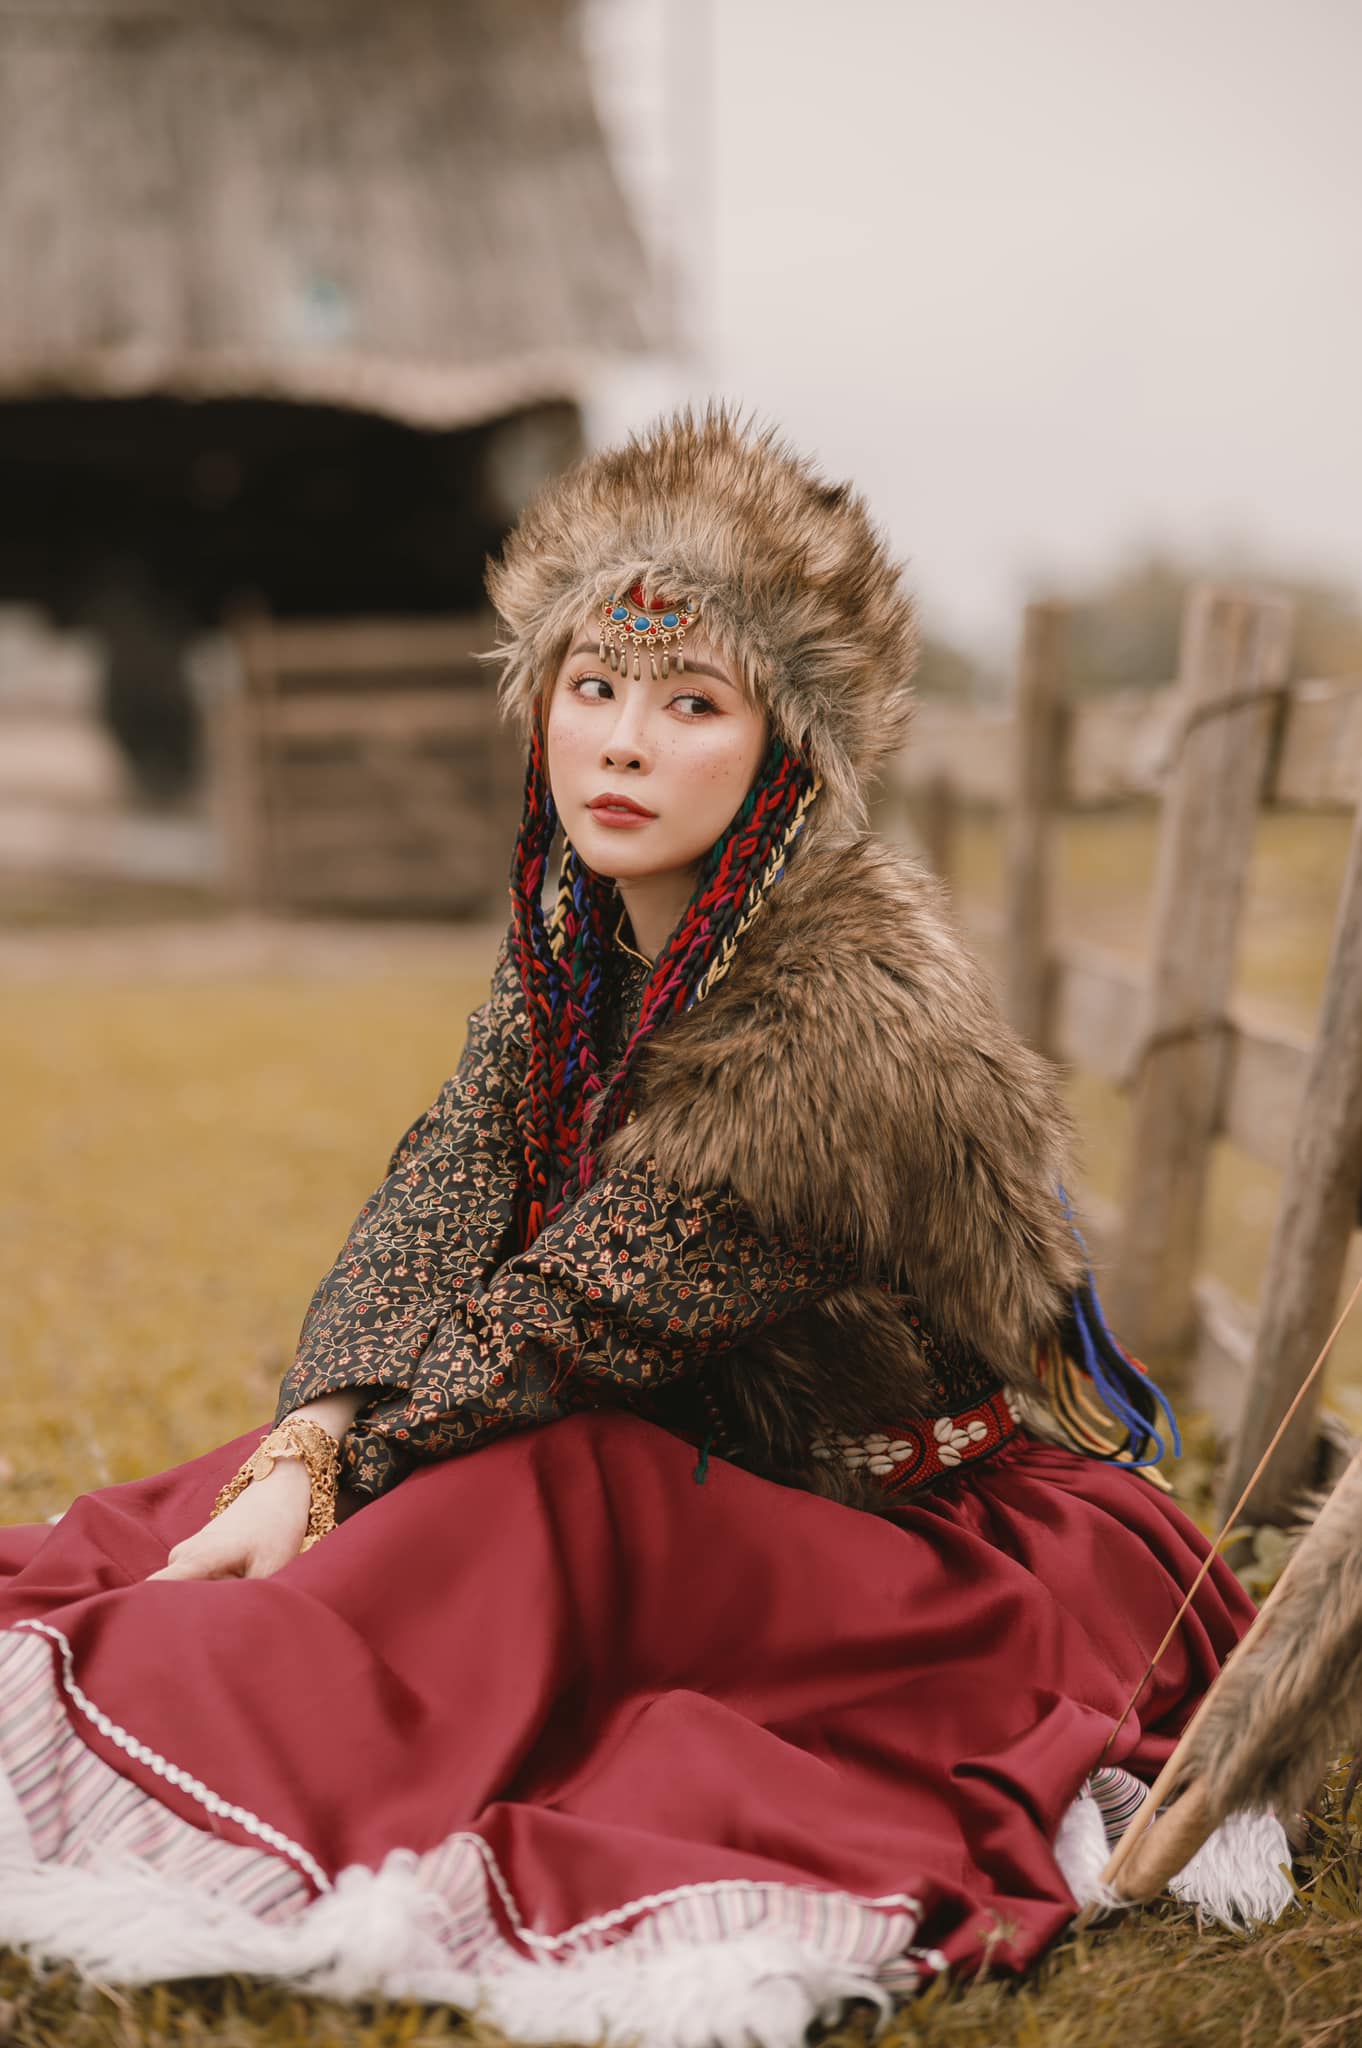 'Cá sấu chúa' Quỳnh Nga hóa công chúa Mông Cổ, cưỡi ngựa bắn cung đẹp như phim cổ trang Hoa ngữ - Ảnh 4